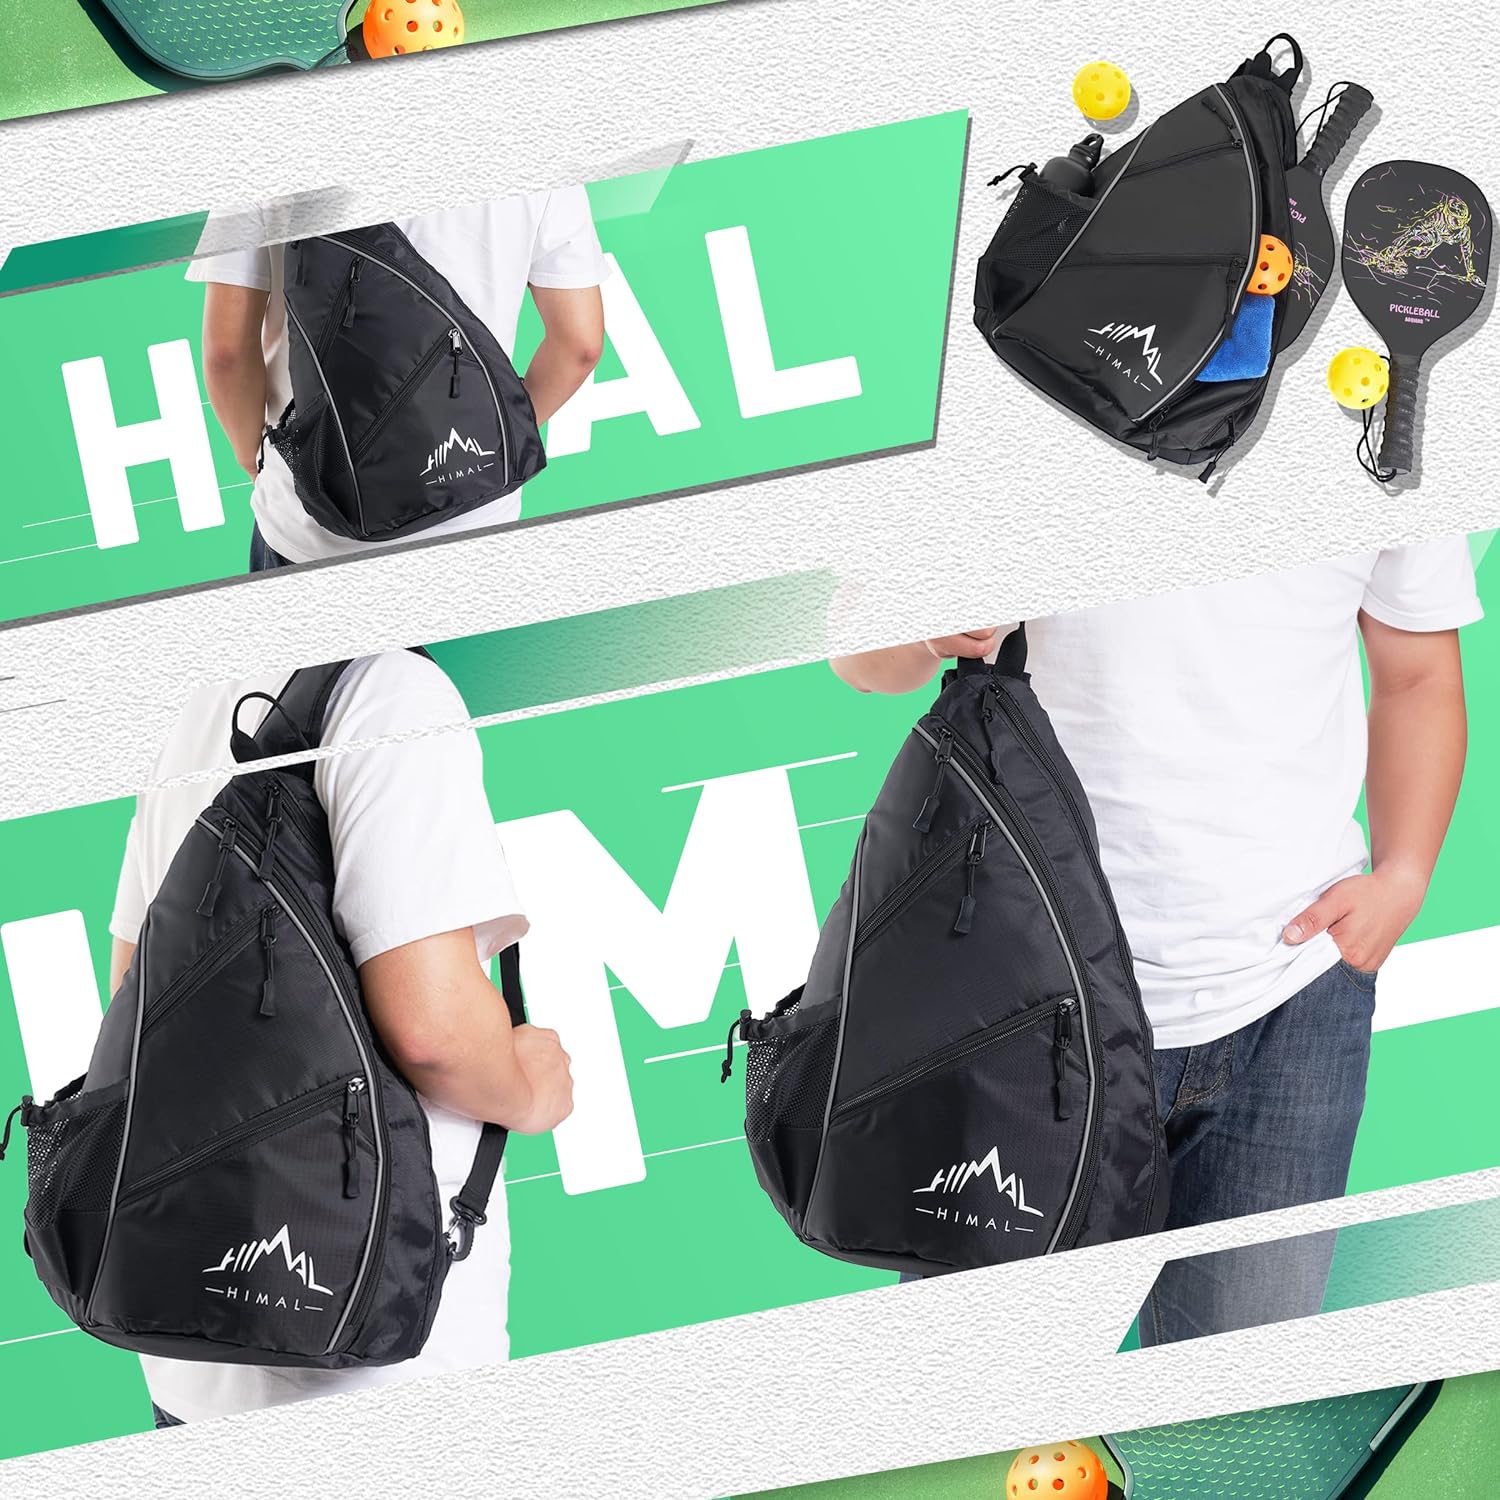 Pickleball Bag-Adjustable Pickleball,Tennis,Racketball Sling Bag-Pickleball Backpack with Water Bottle Holder for Men